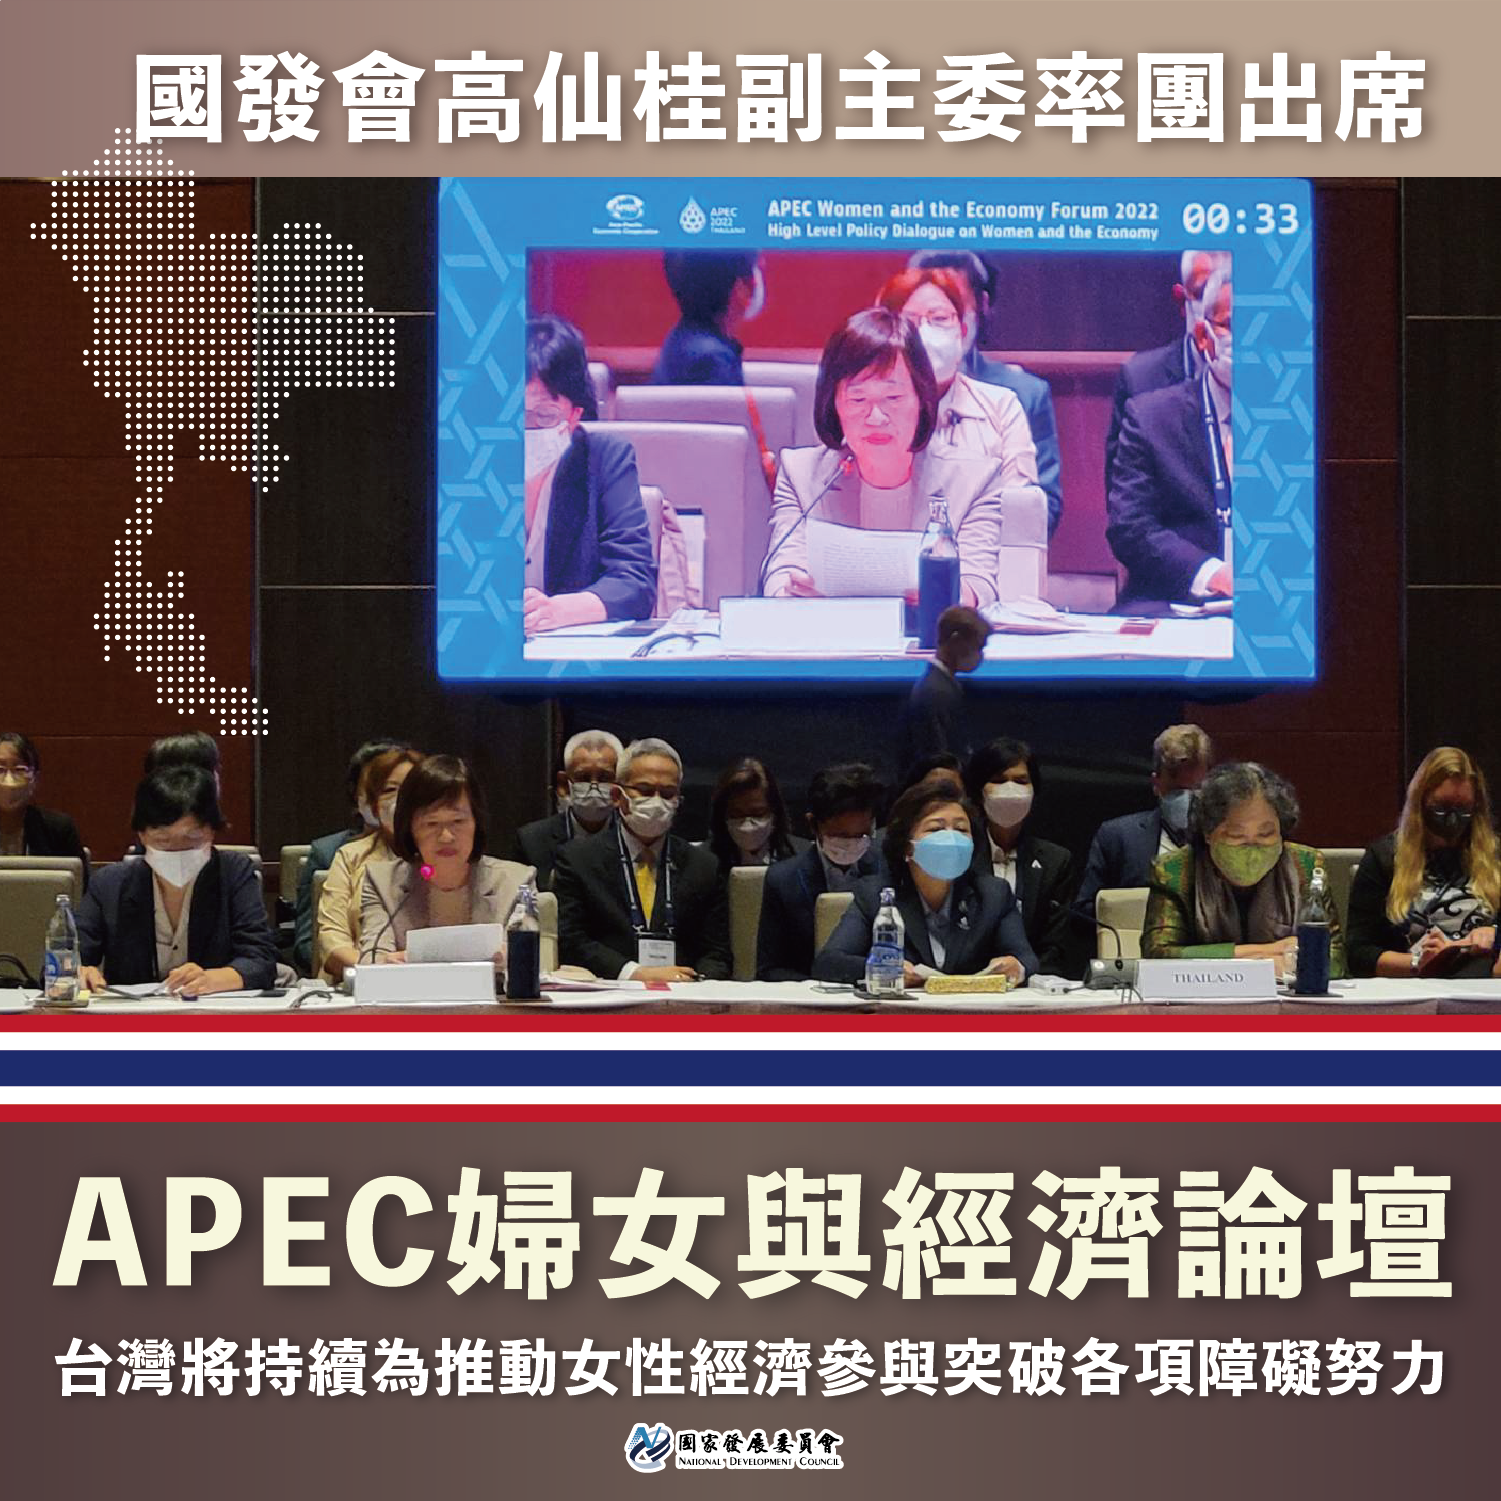 高副主委出任務︰率團參與APEC婦女與經濟論壇圖卡